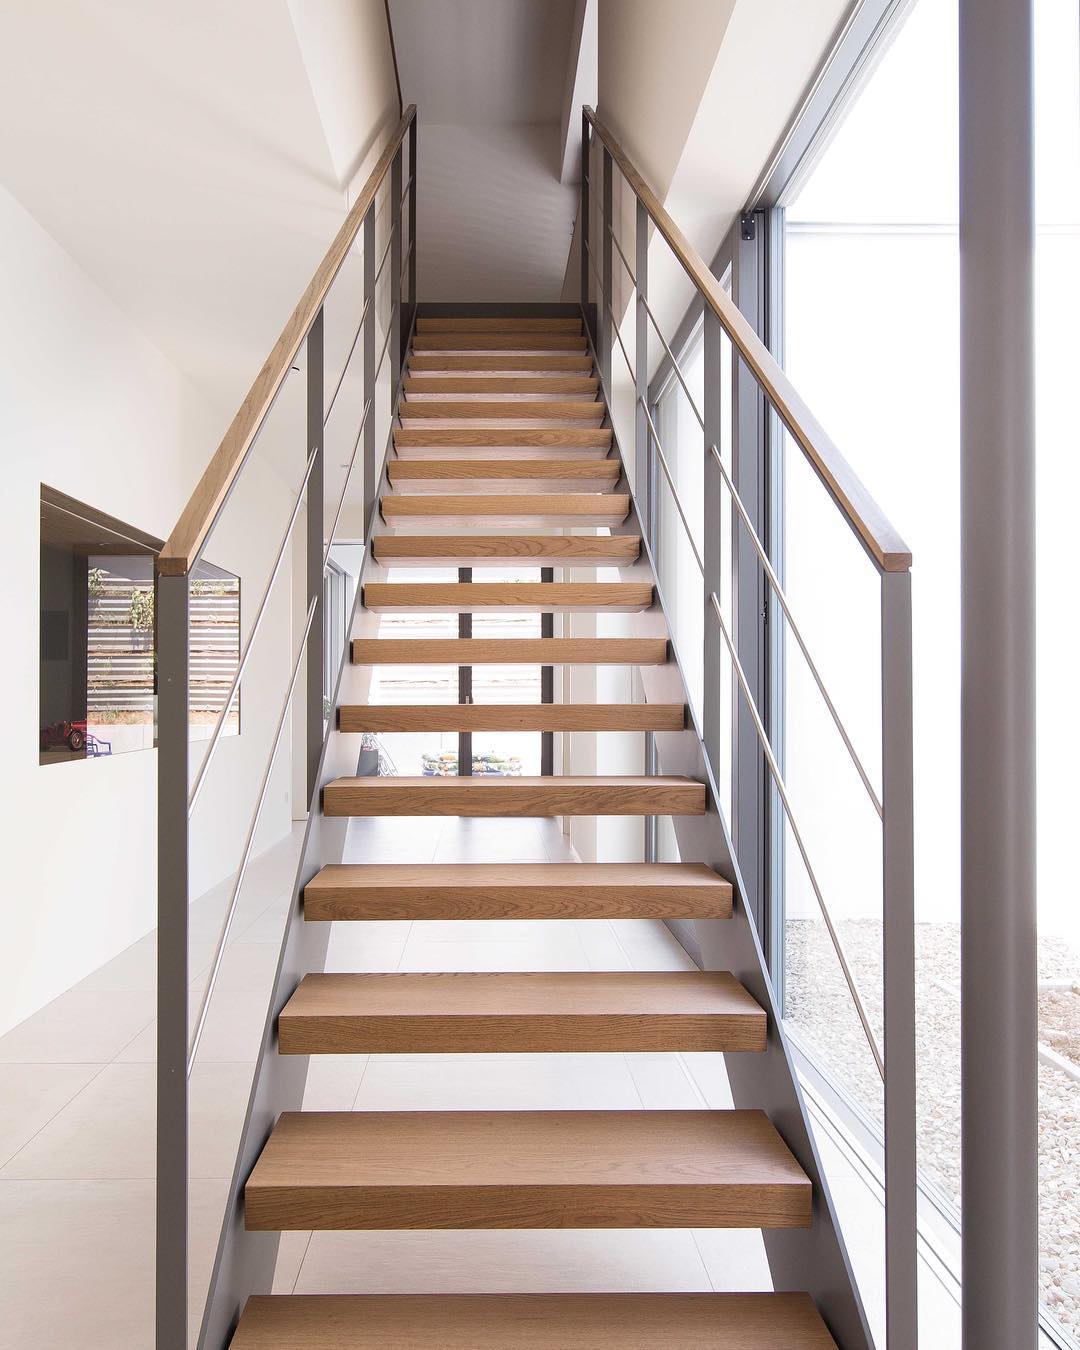 Modern staircase in minimalist home design. Photo by Instagram user @admonteraustralia